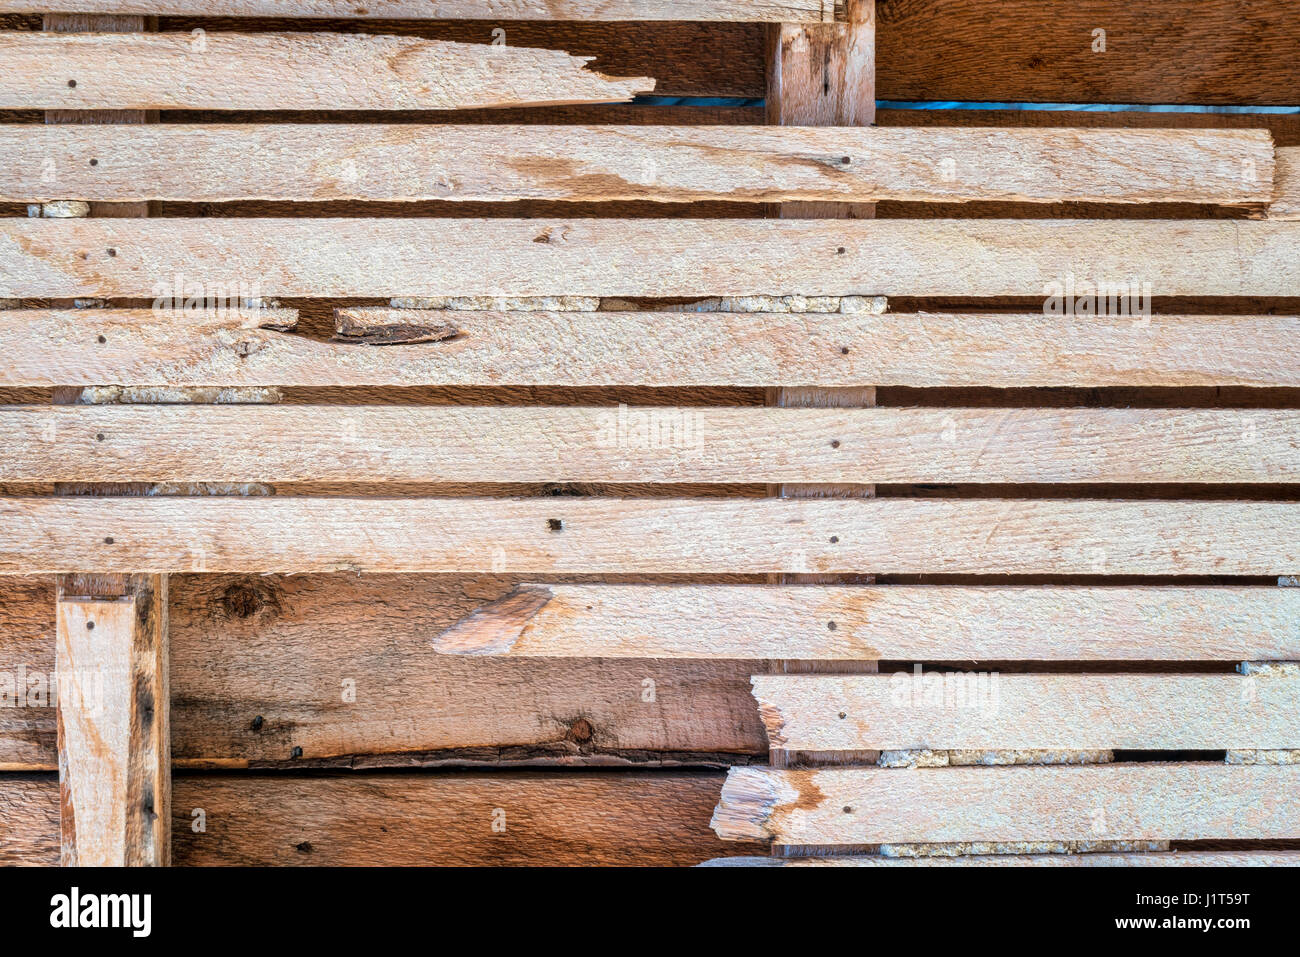 La dégradation du milieu urbain contexte - mur intérieur de maison abandonnée avec planches en bois Banque D'Images